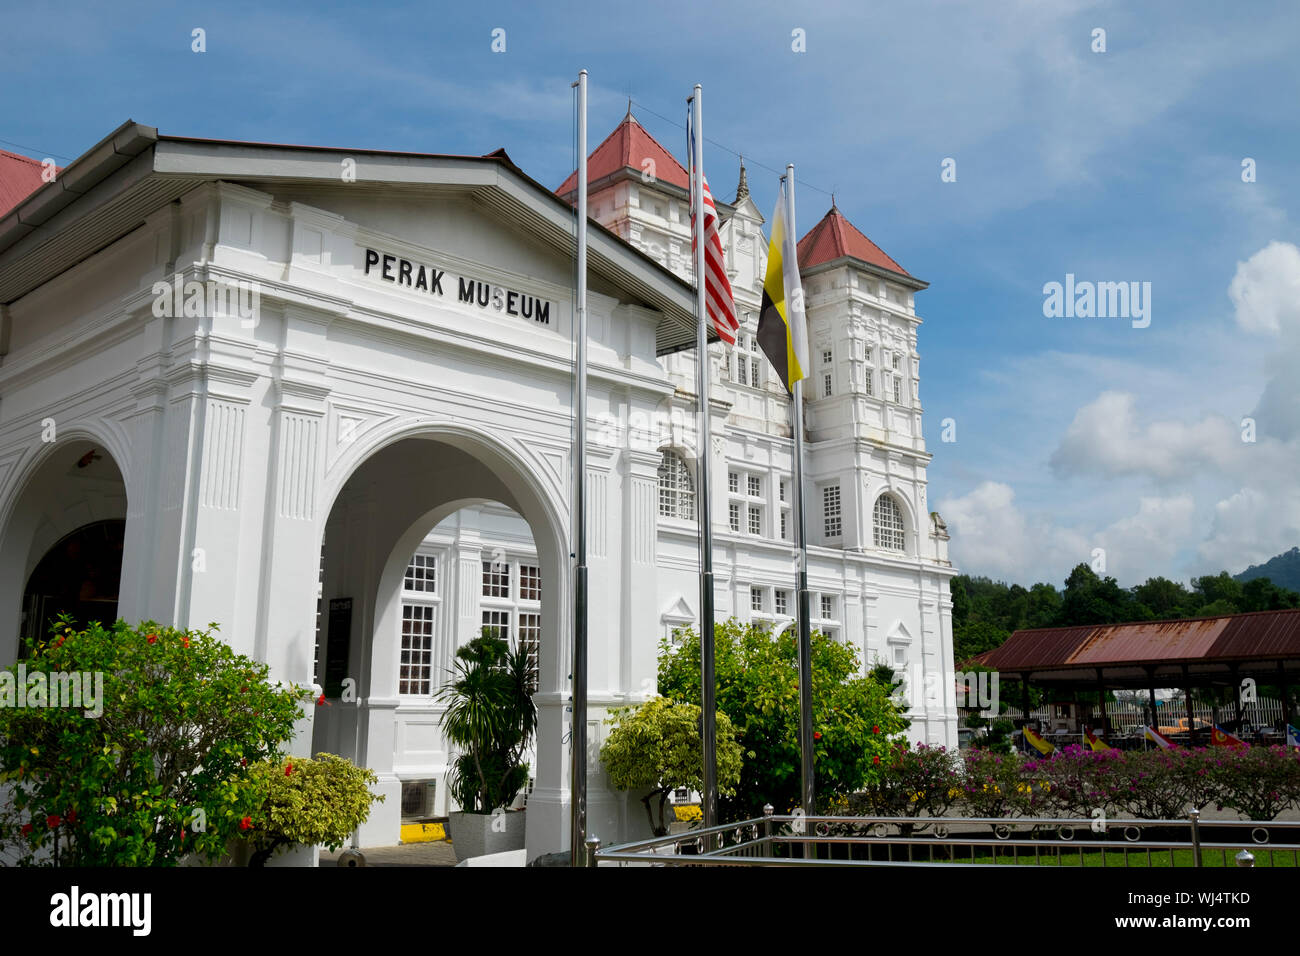 Den vorderen Eingang des Perak Museum in Taiping, Perak, Malaysia. Das Museum verfügt über kulturelle, historische Artefakte und umfangreiche taxidermy Tiere Stockfoto